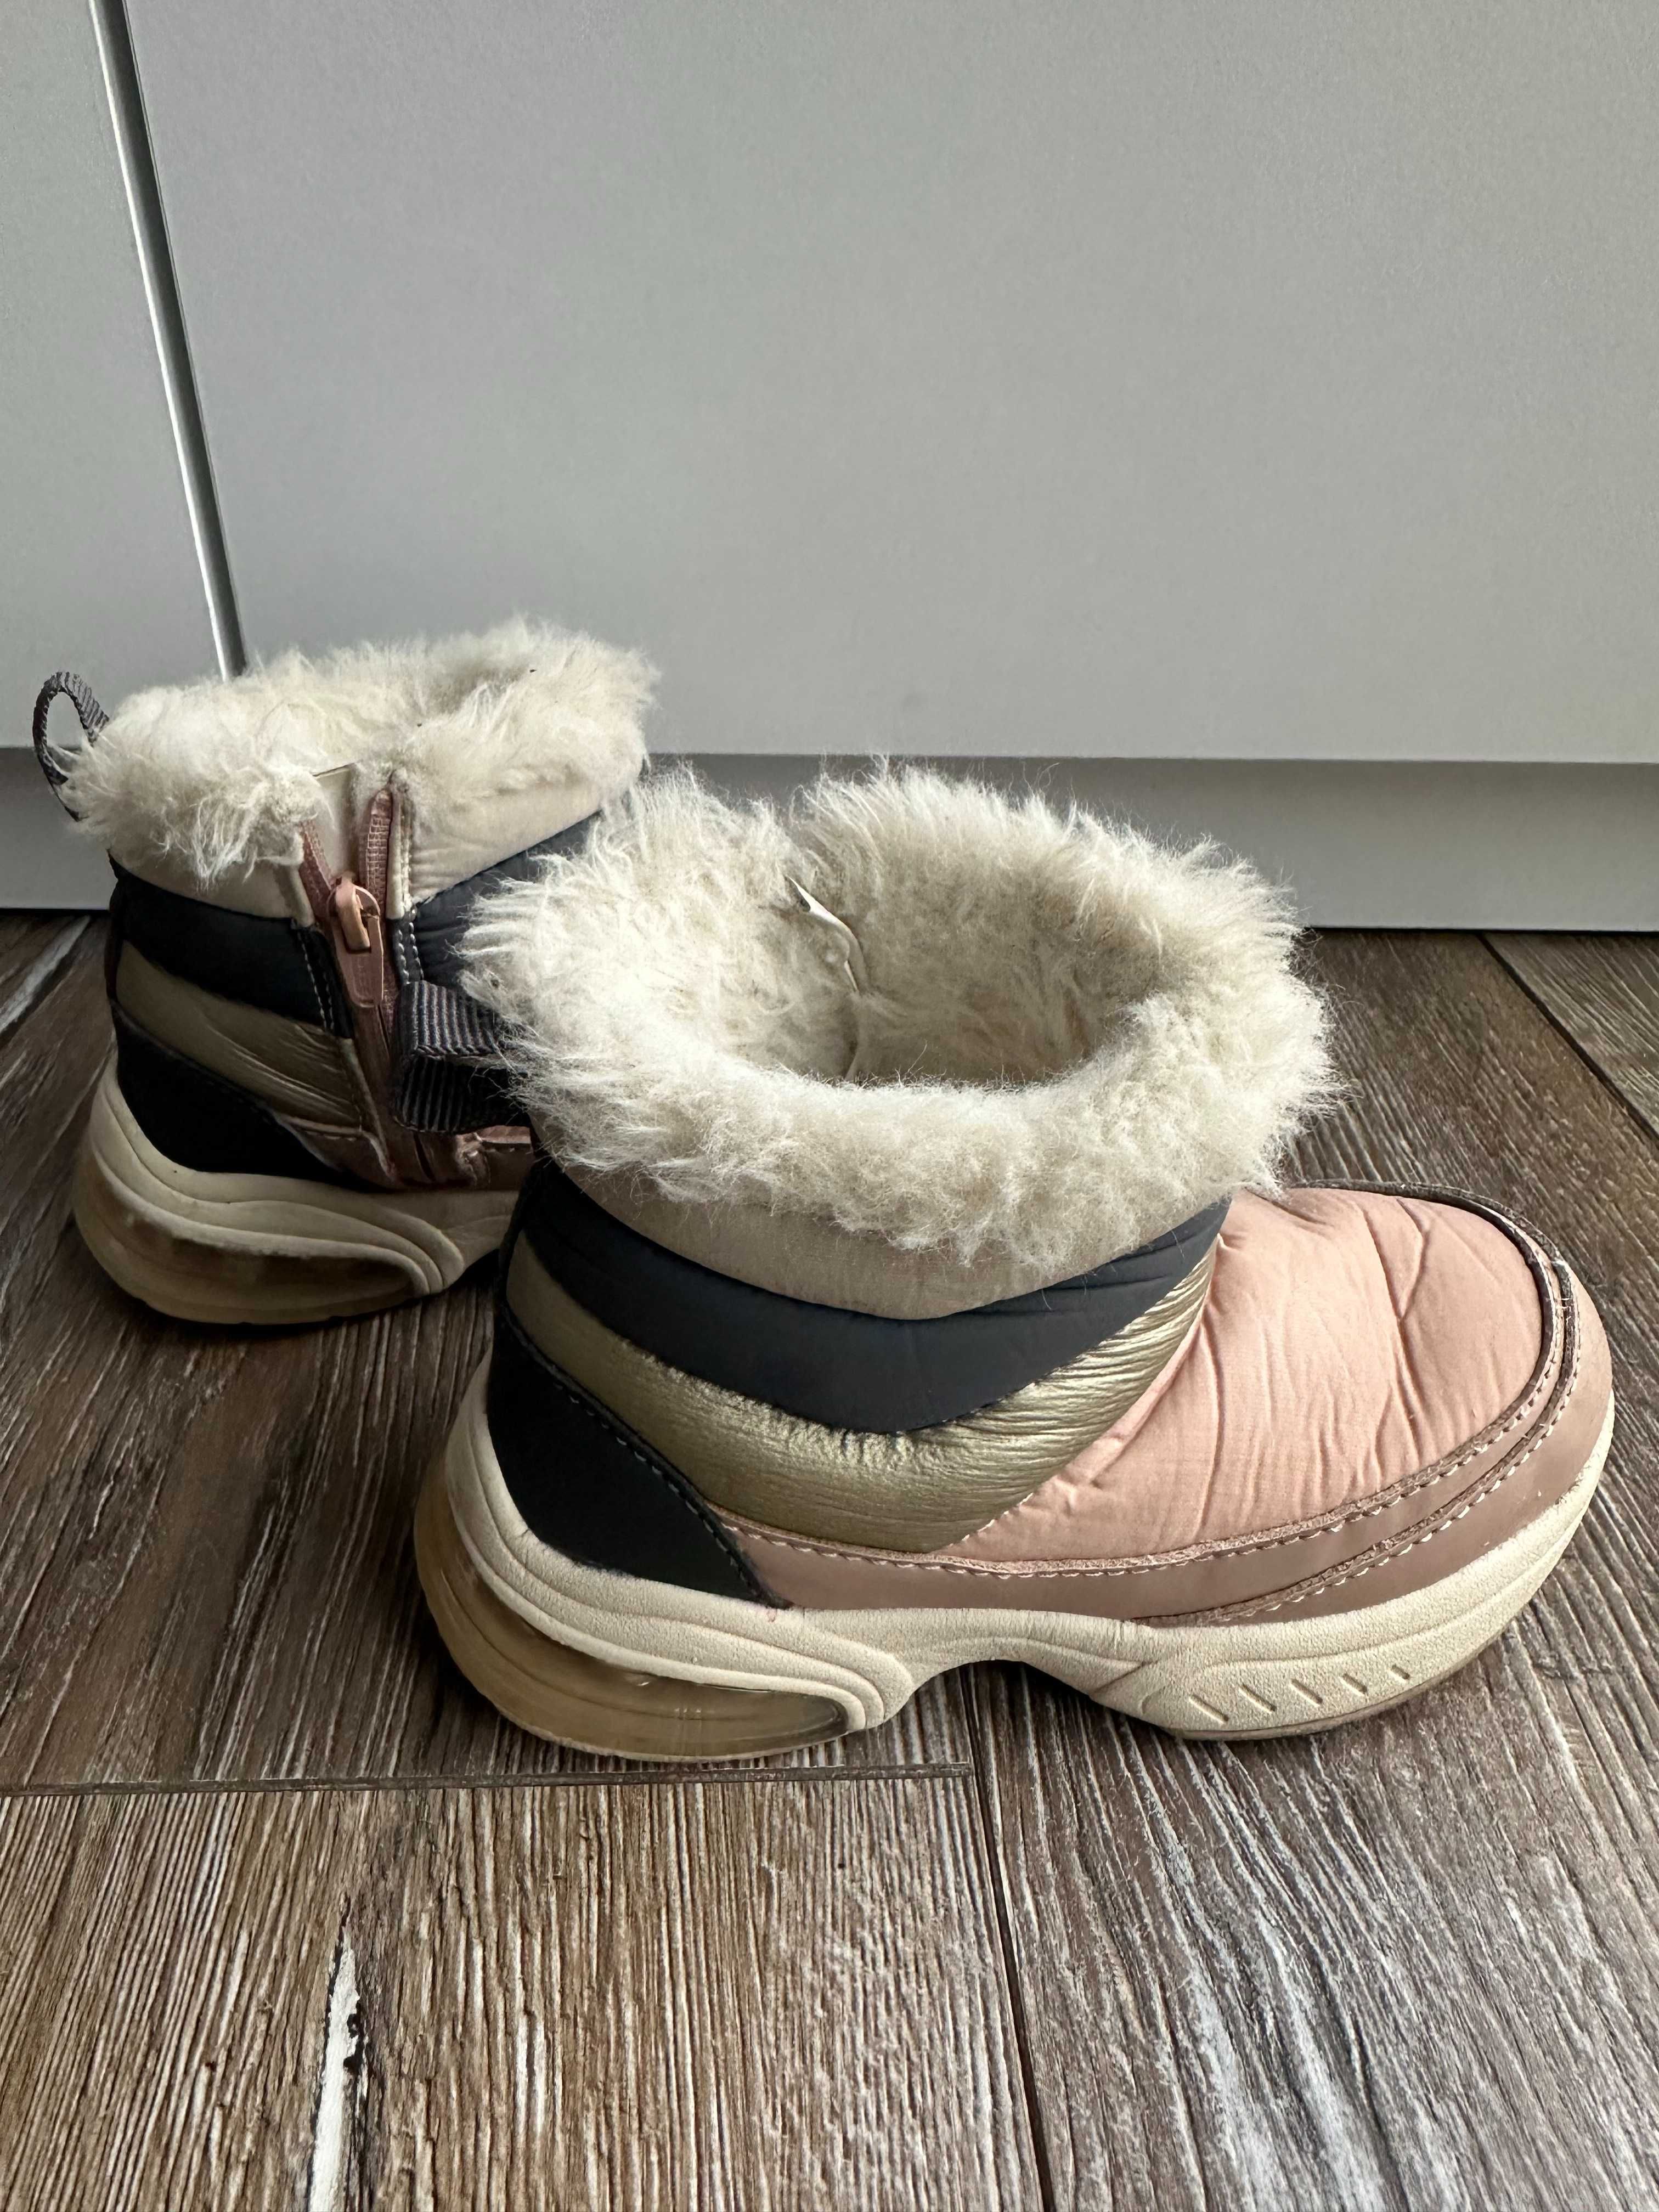 Buty zimowe Zara rozmiar 24 beżowe botki śniegowce z futerkiem 24 bdb